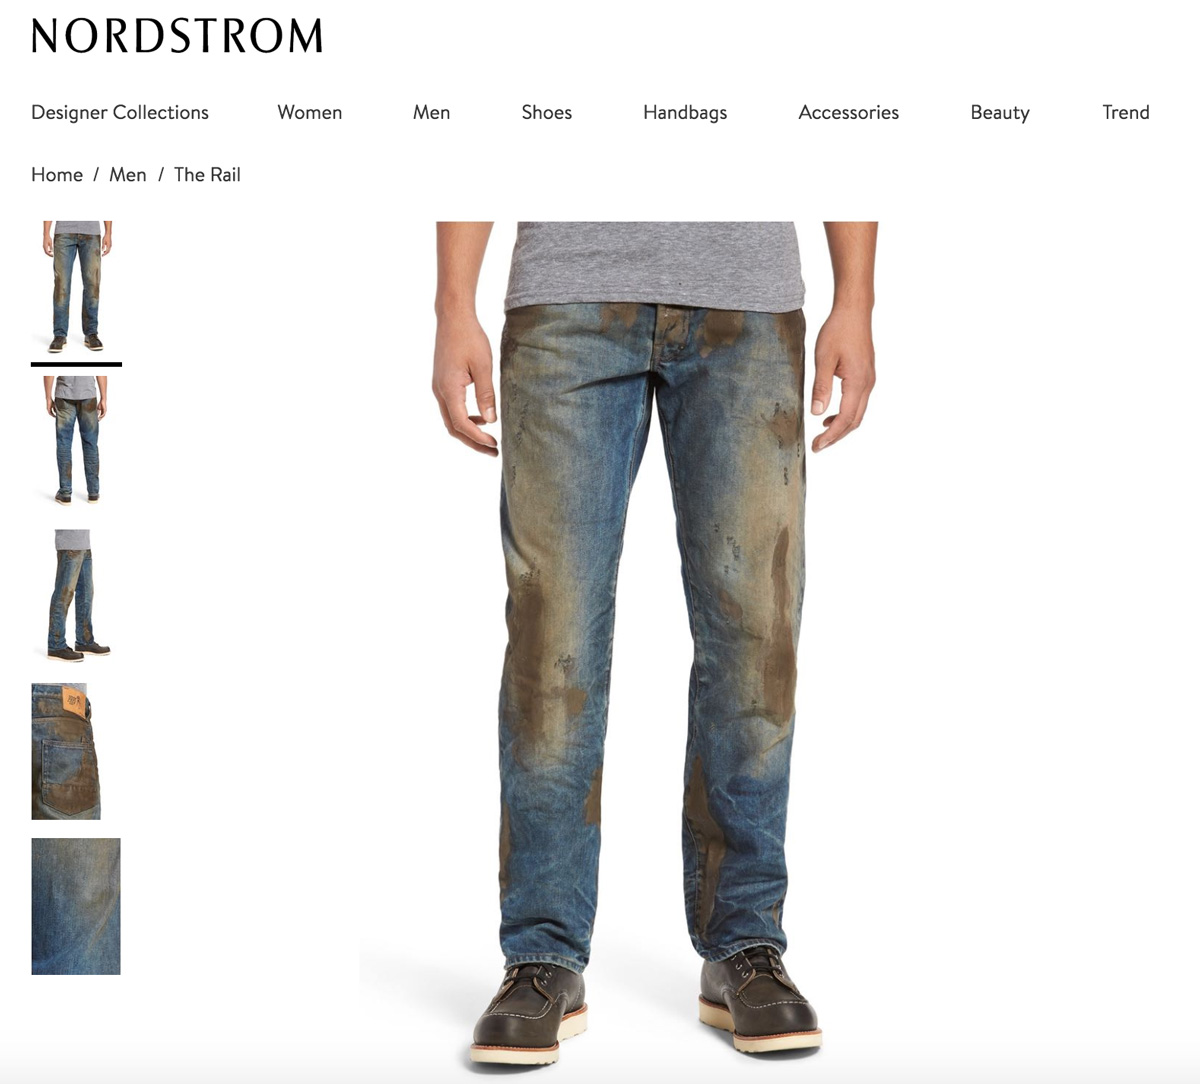 Джинсы грязного цвета. Грязные джинсы. Джинсы Nordstrom. Джинсы с оттенком грязи. Джинсы с имитацией грязи.